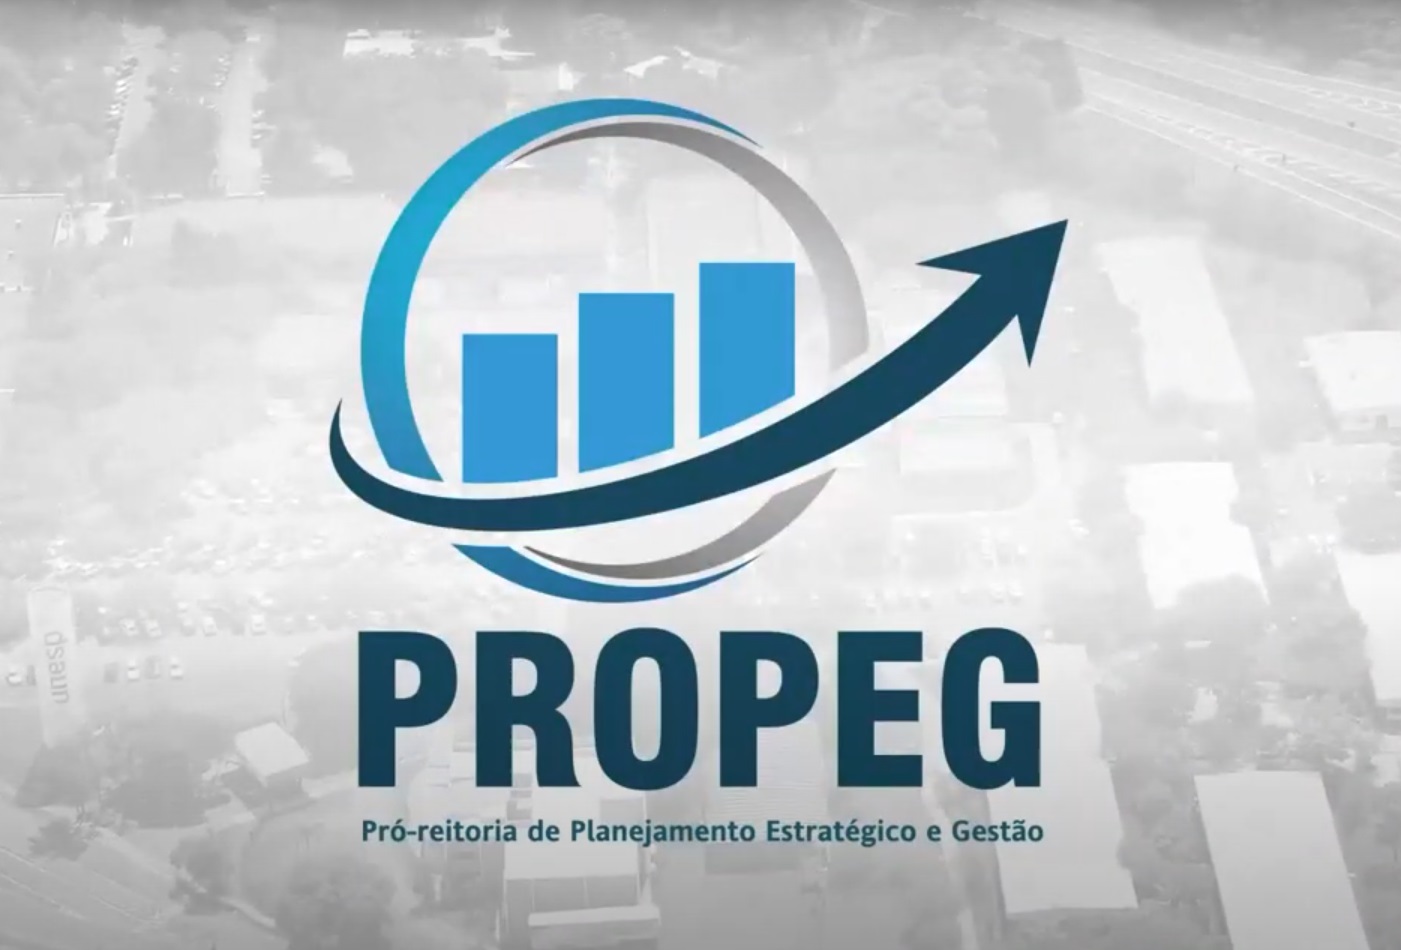 Imagem do logotipo da Propeg, pró-reitoria de planejamento estratégico e gestão da Unesp